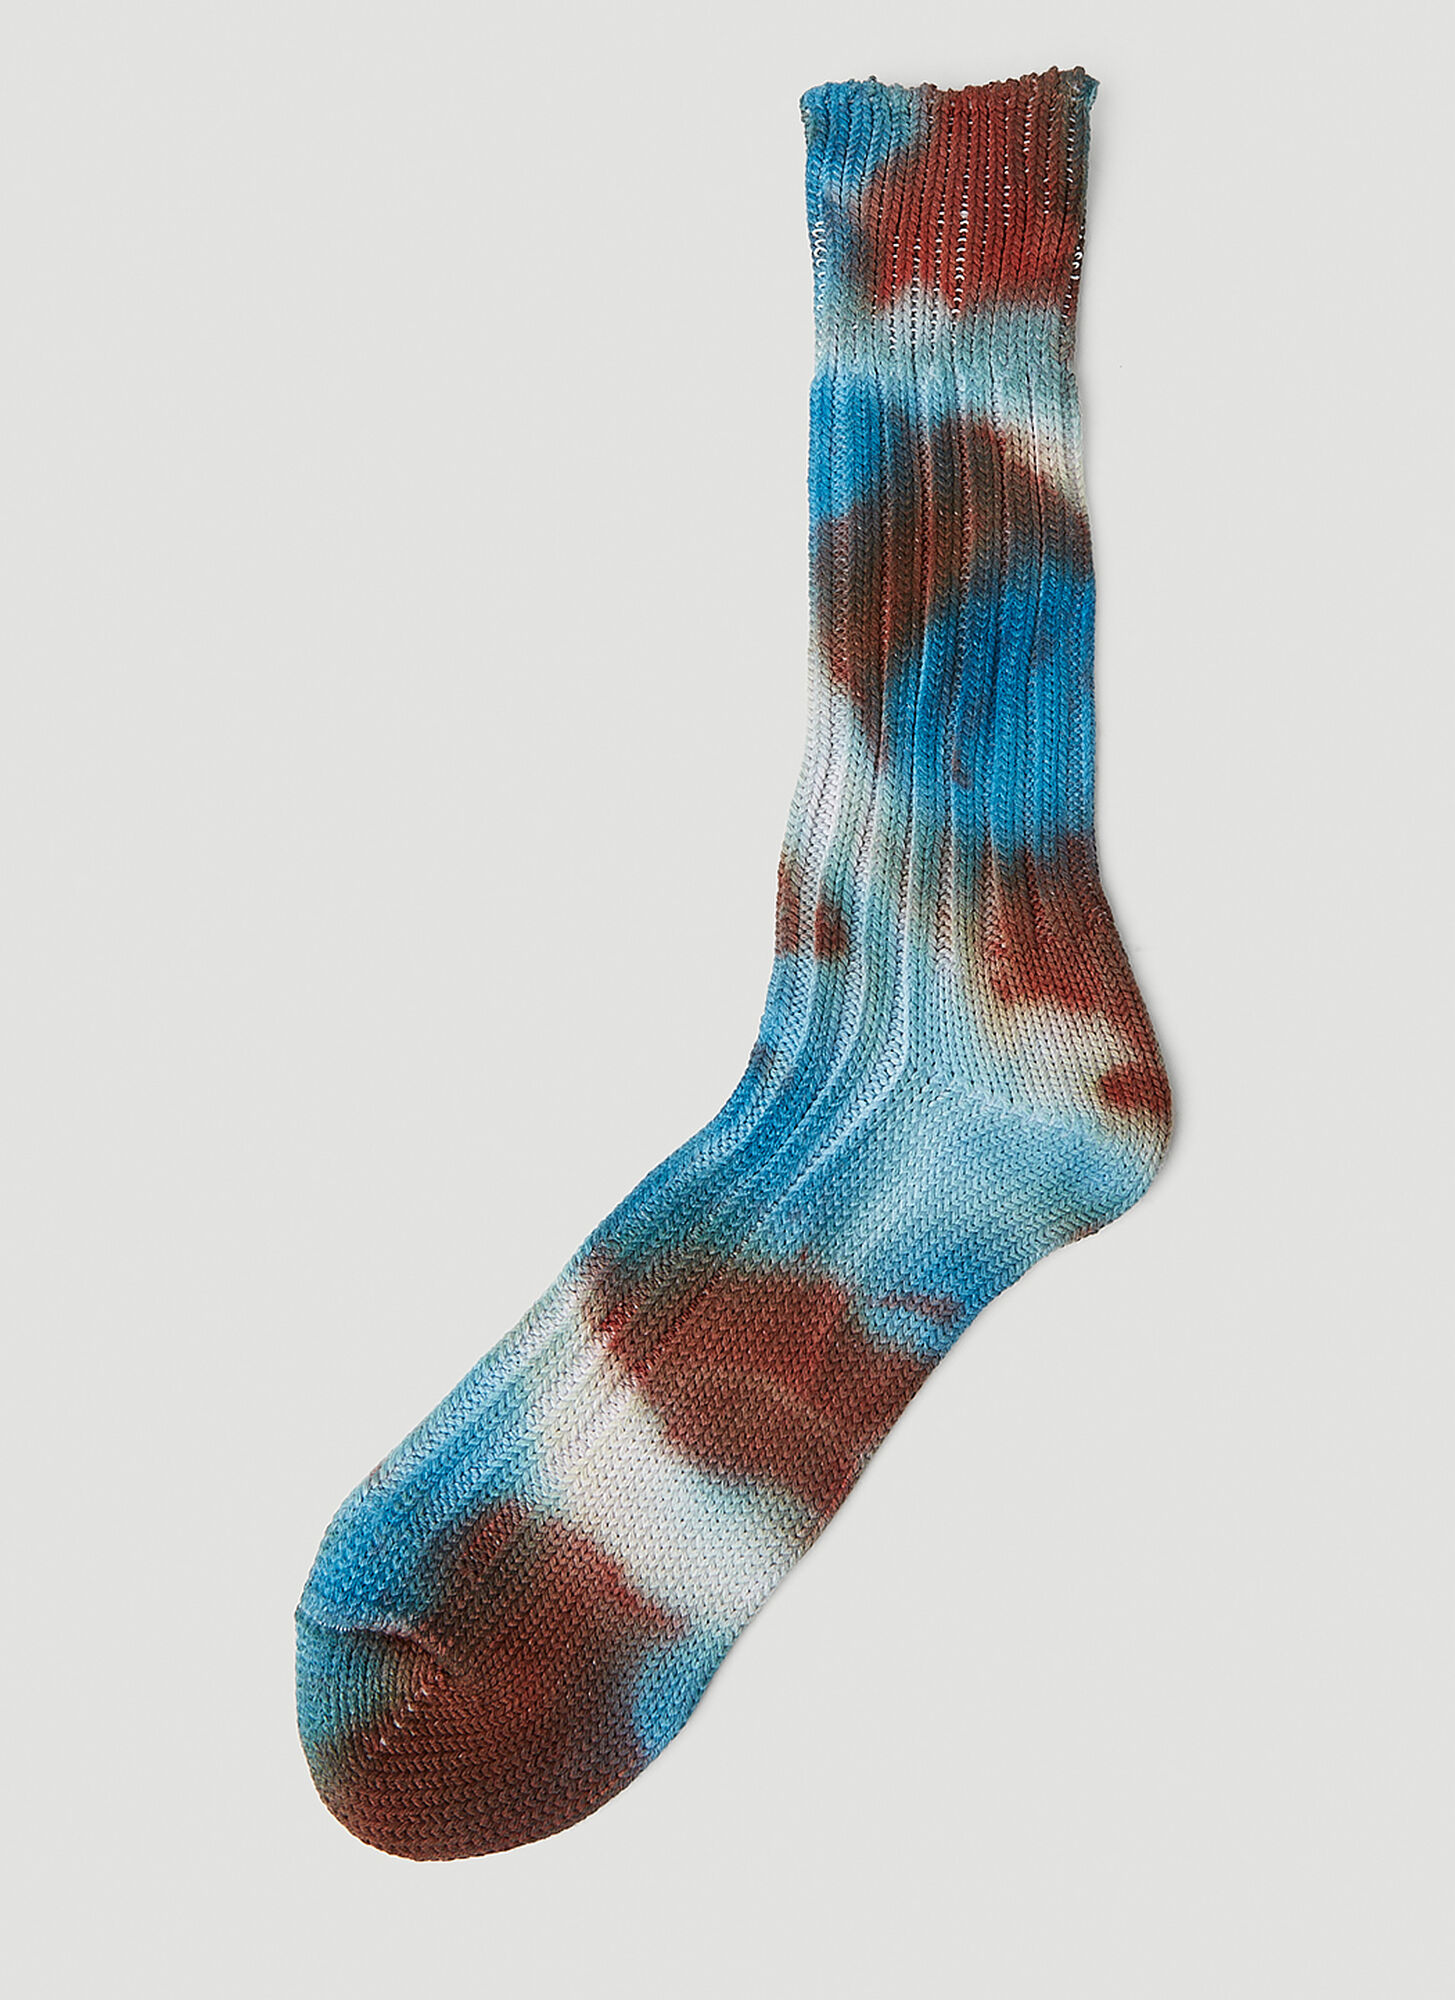 Stain Shade X Decka Socks Tie Dye Socks In Blue